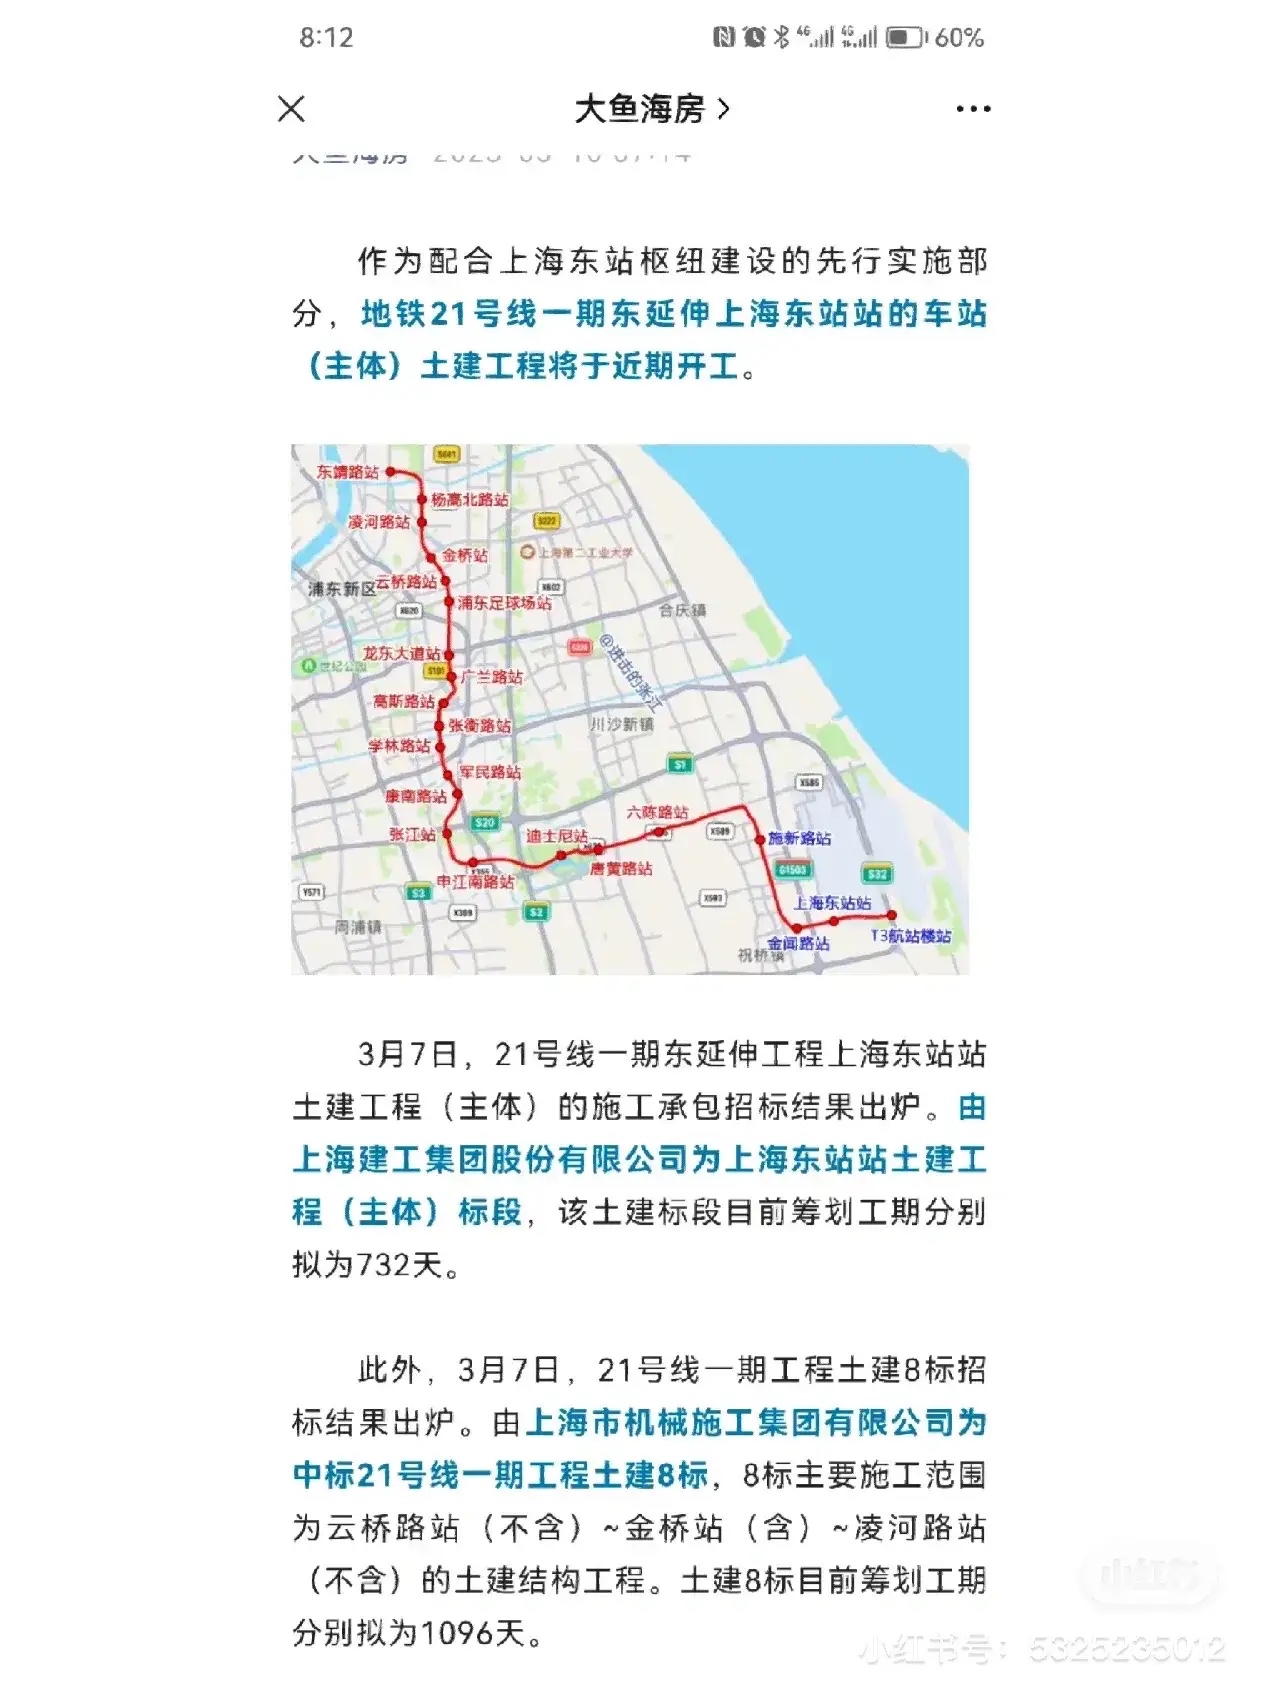 上海地铁21号线东延伸土建即将开工